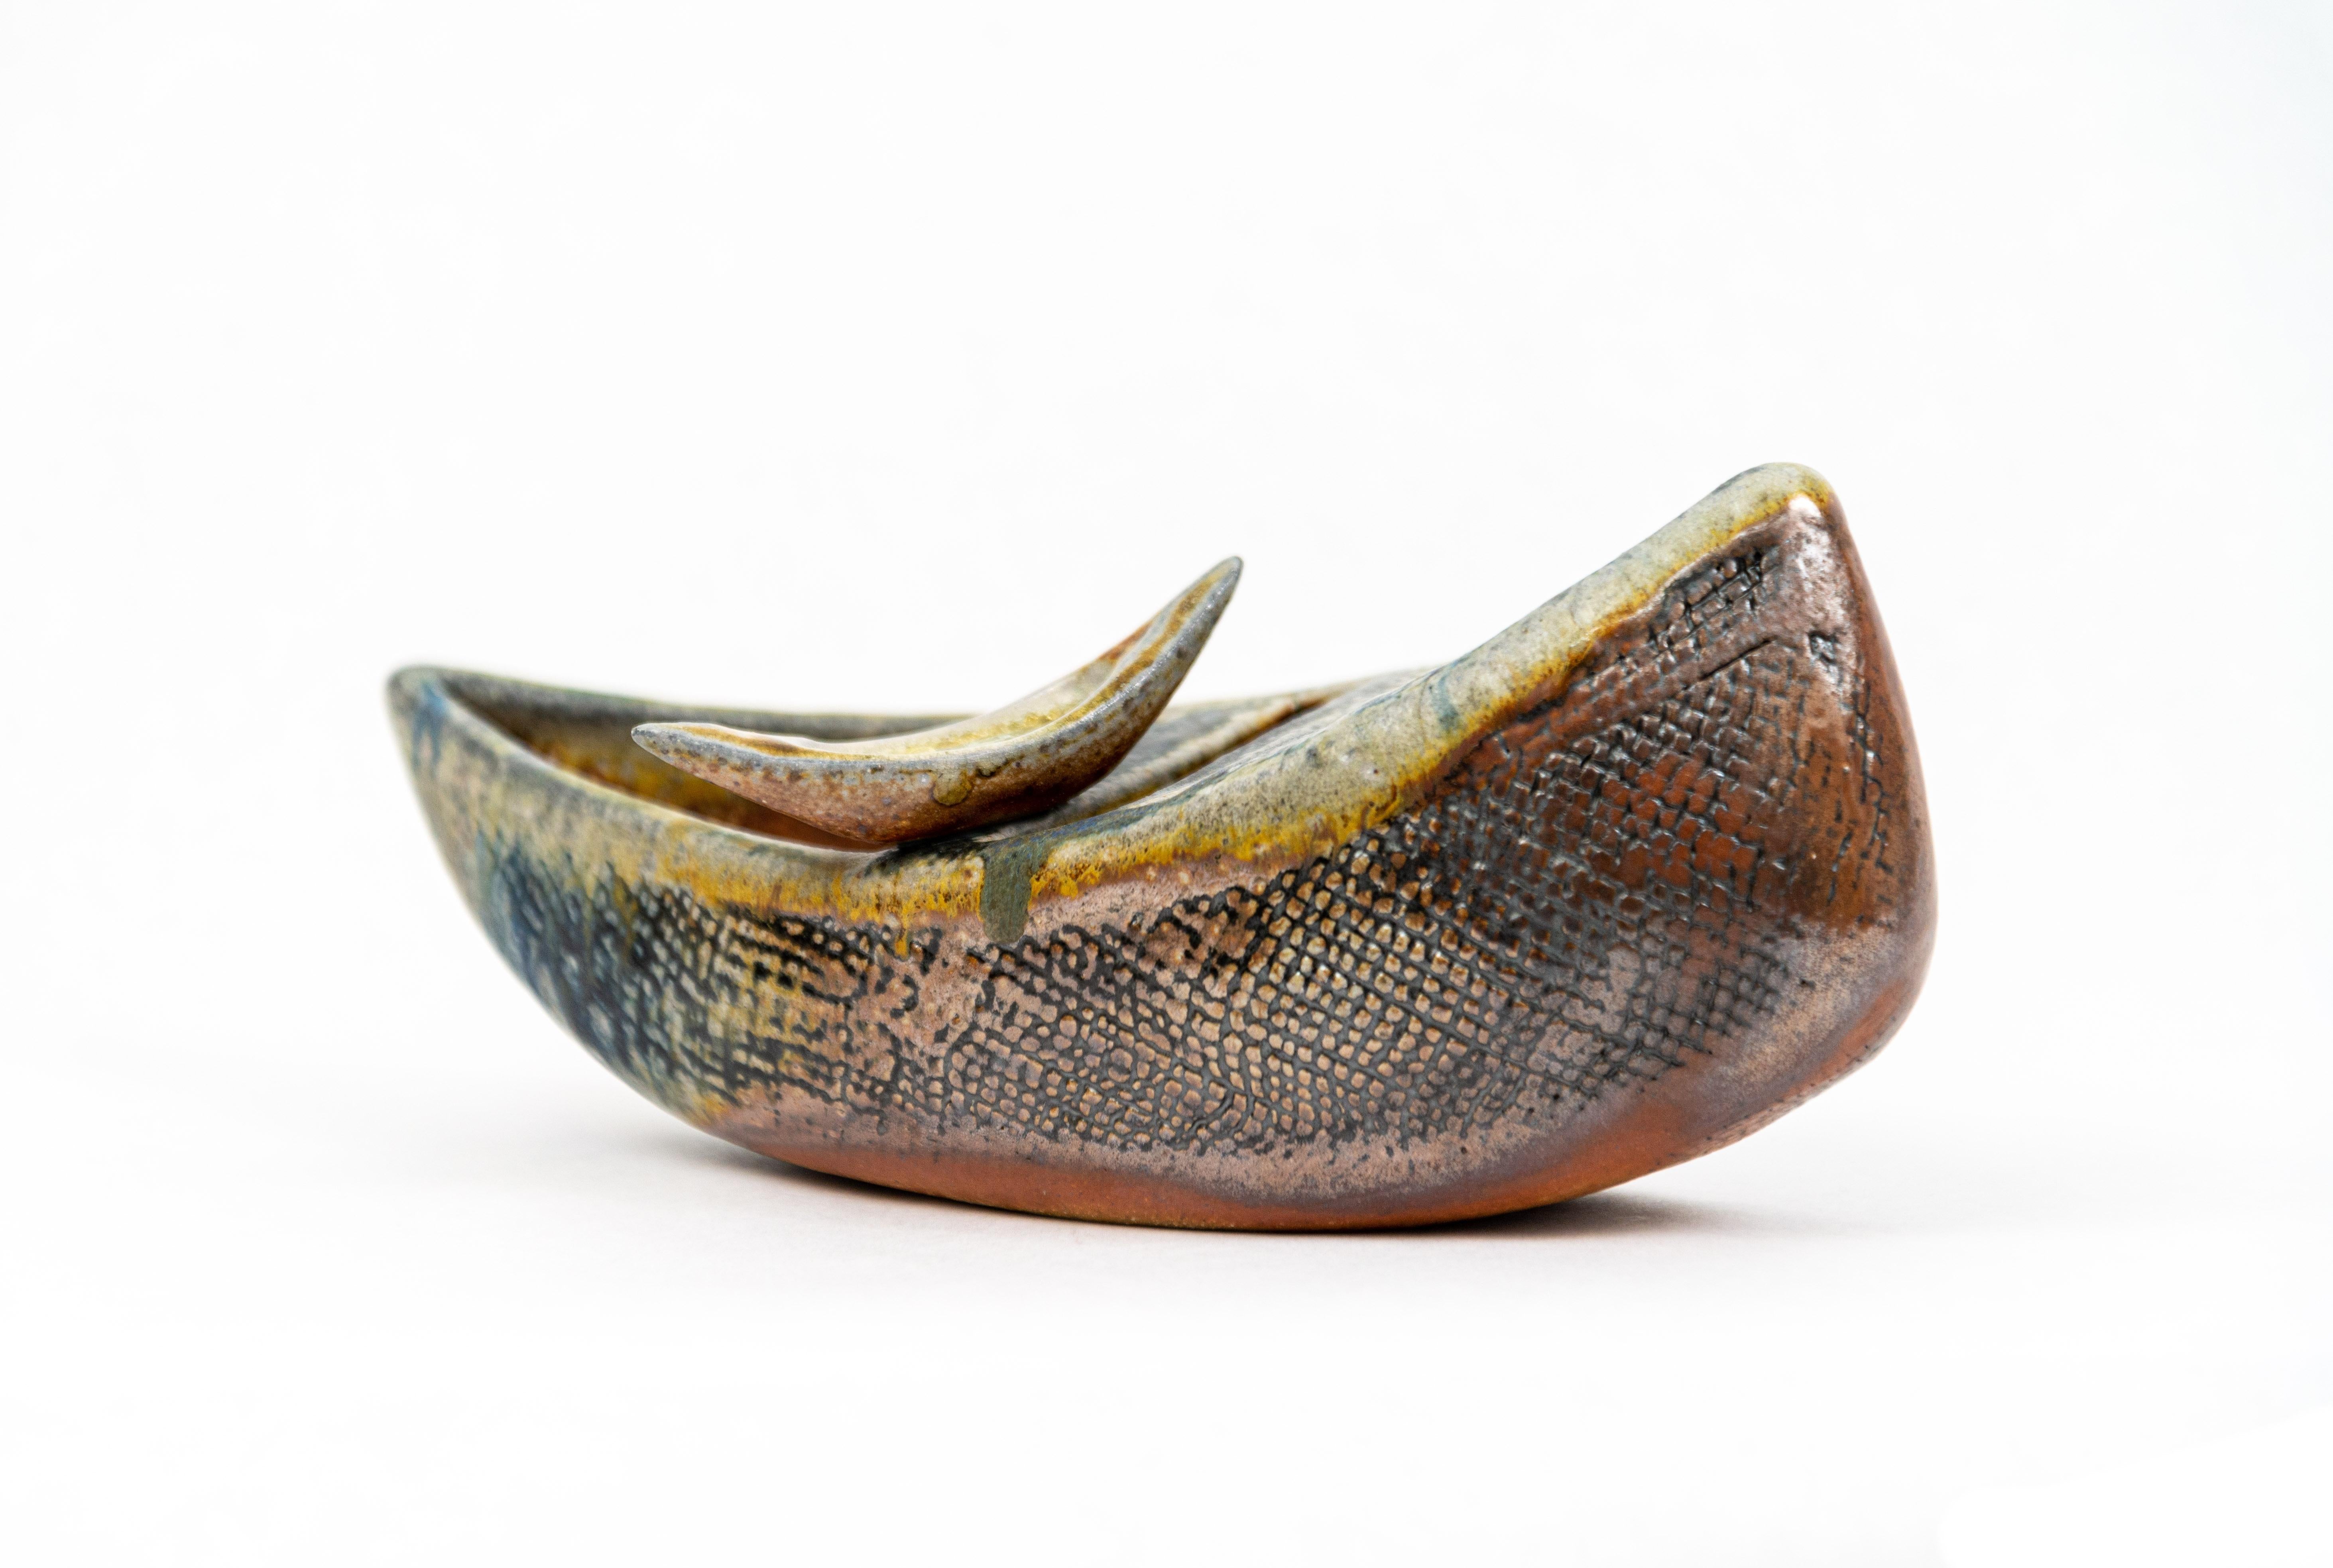 Embarking - detailed, inscribed, hand-built, vessel, glass, ceramic sculpture - Sculpture by Heather Allen Hietala